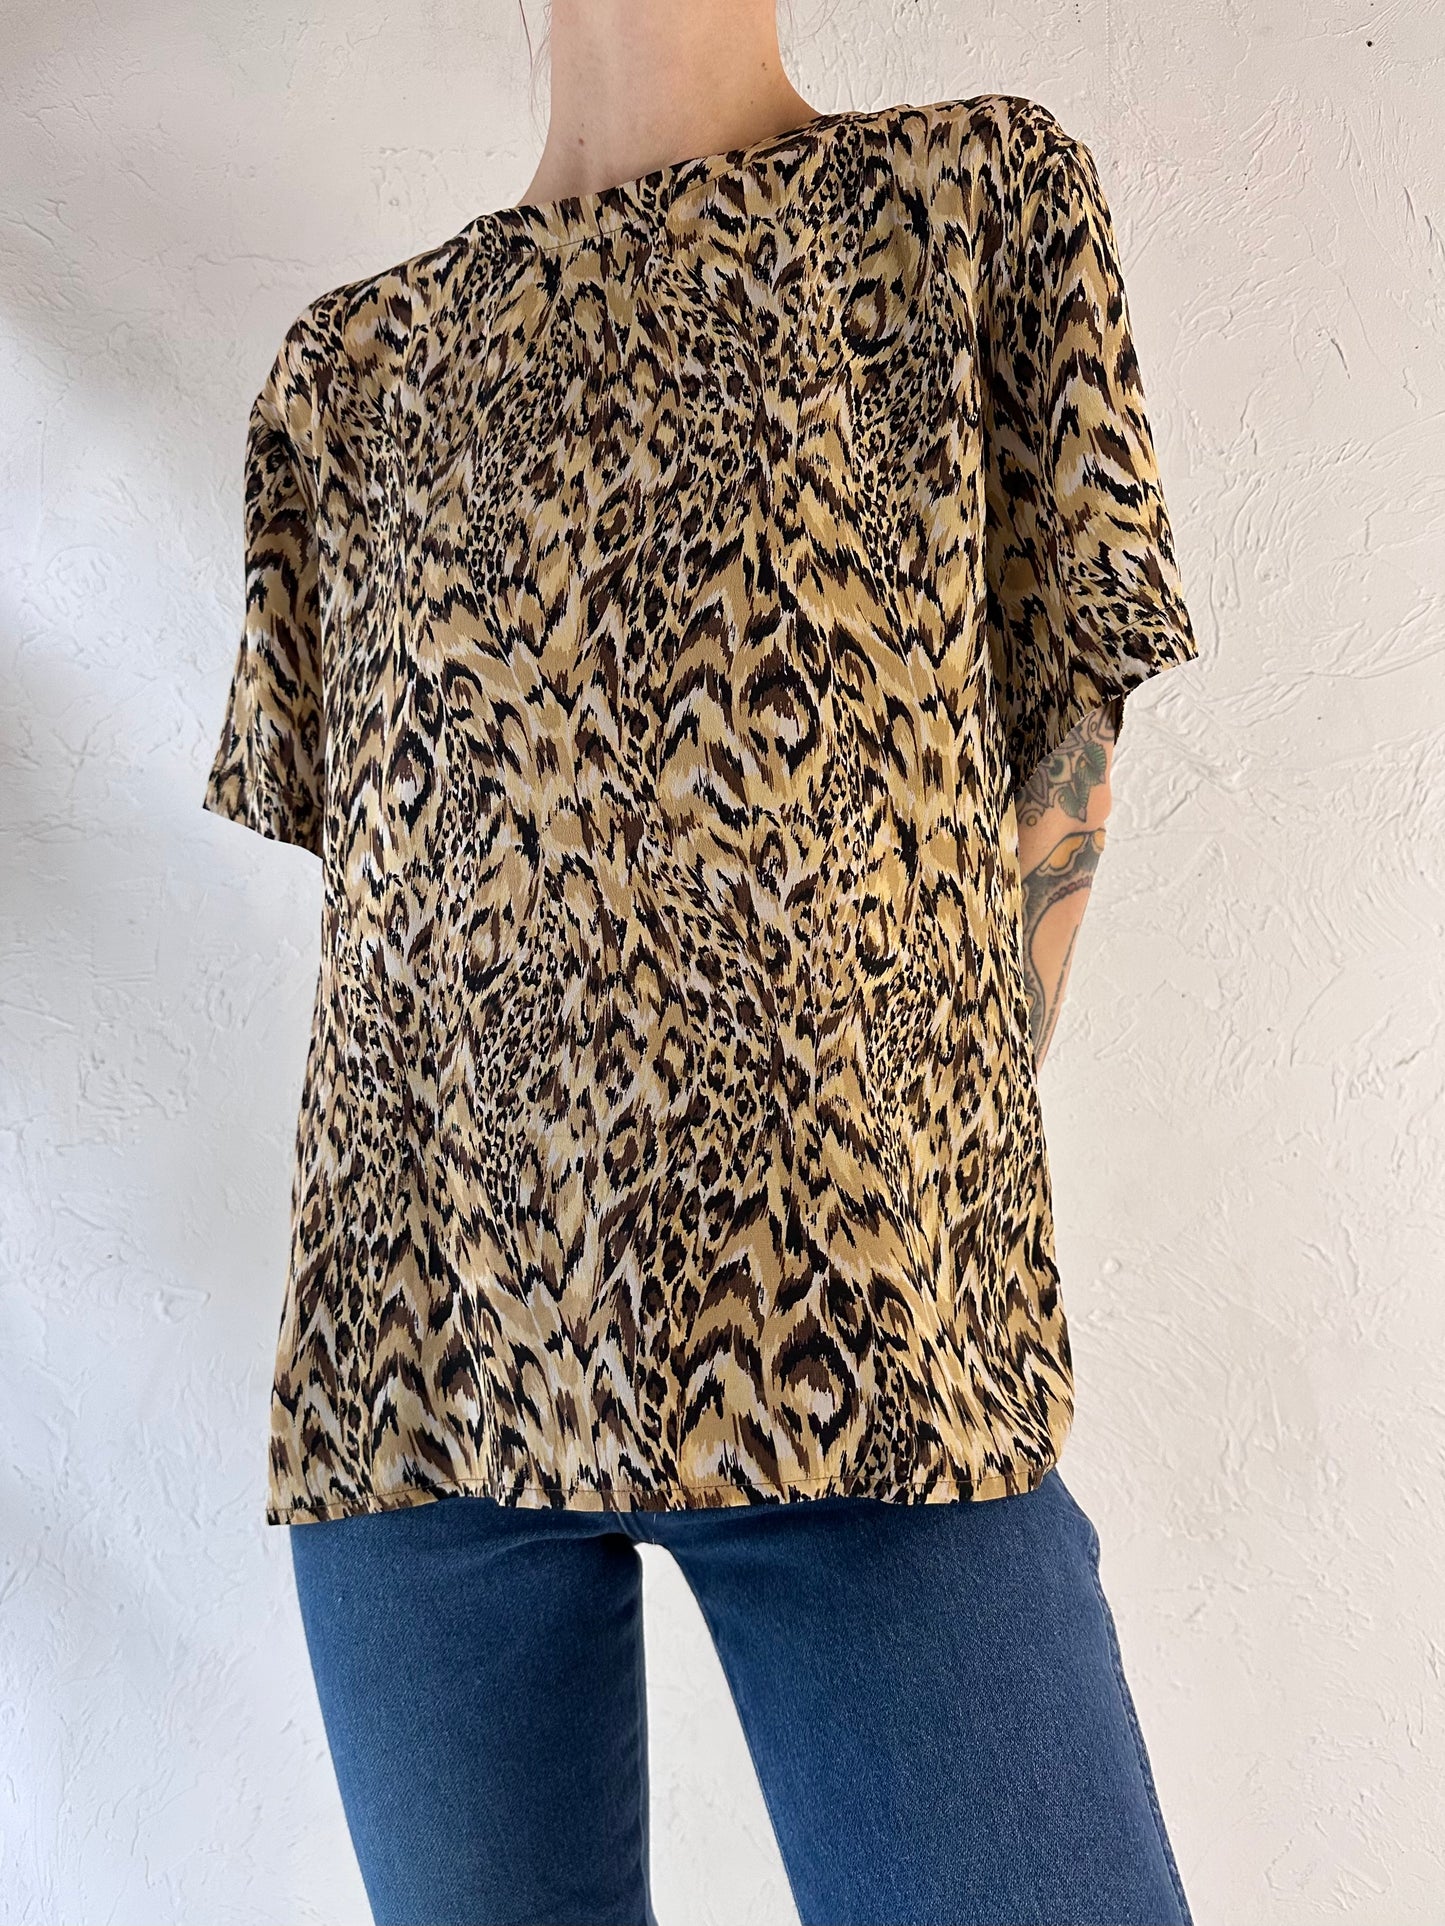 90s 'GB Studio' Leopard Print Silk Top / Large